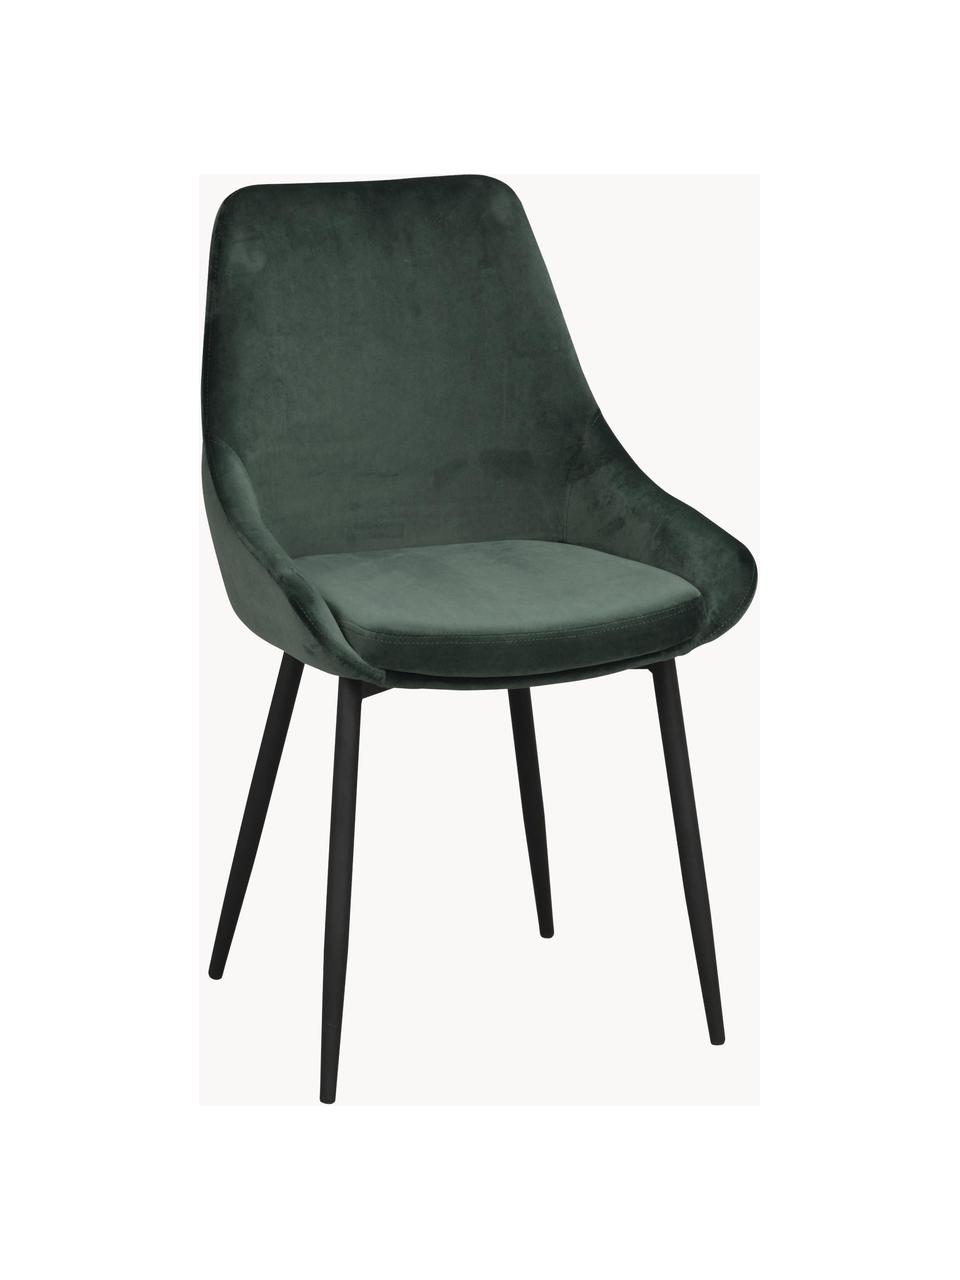 Krzesło tapicerowane z aksamitu Sierra, 2 szt., Tapicerka: 100% aksamit poliestrowy, Nogi: metal lakierowany, Zielony aksamit, S 49 x G 55 cm